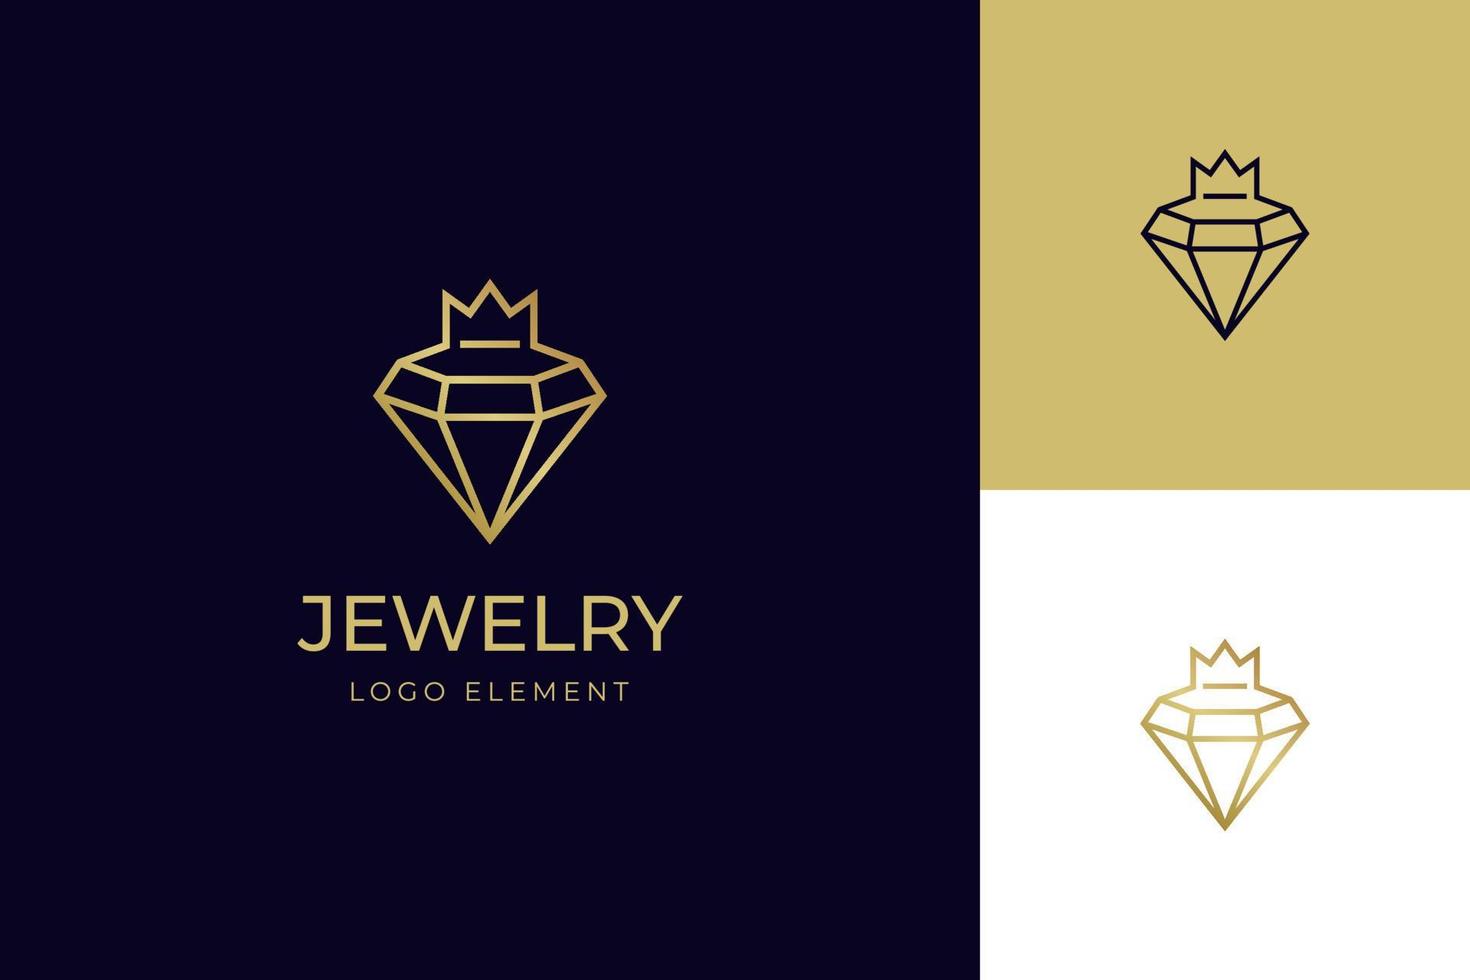 lusso linea diamante re con gioielleria elegante logo icona design concetto per gioielleria negozio attività commerciale identità logo illustrazione semplice minimo lineare stile vettore